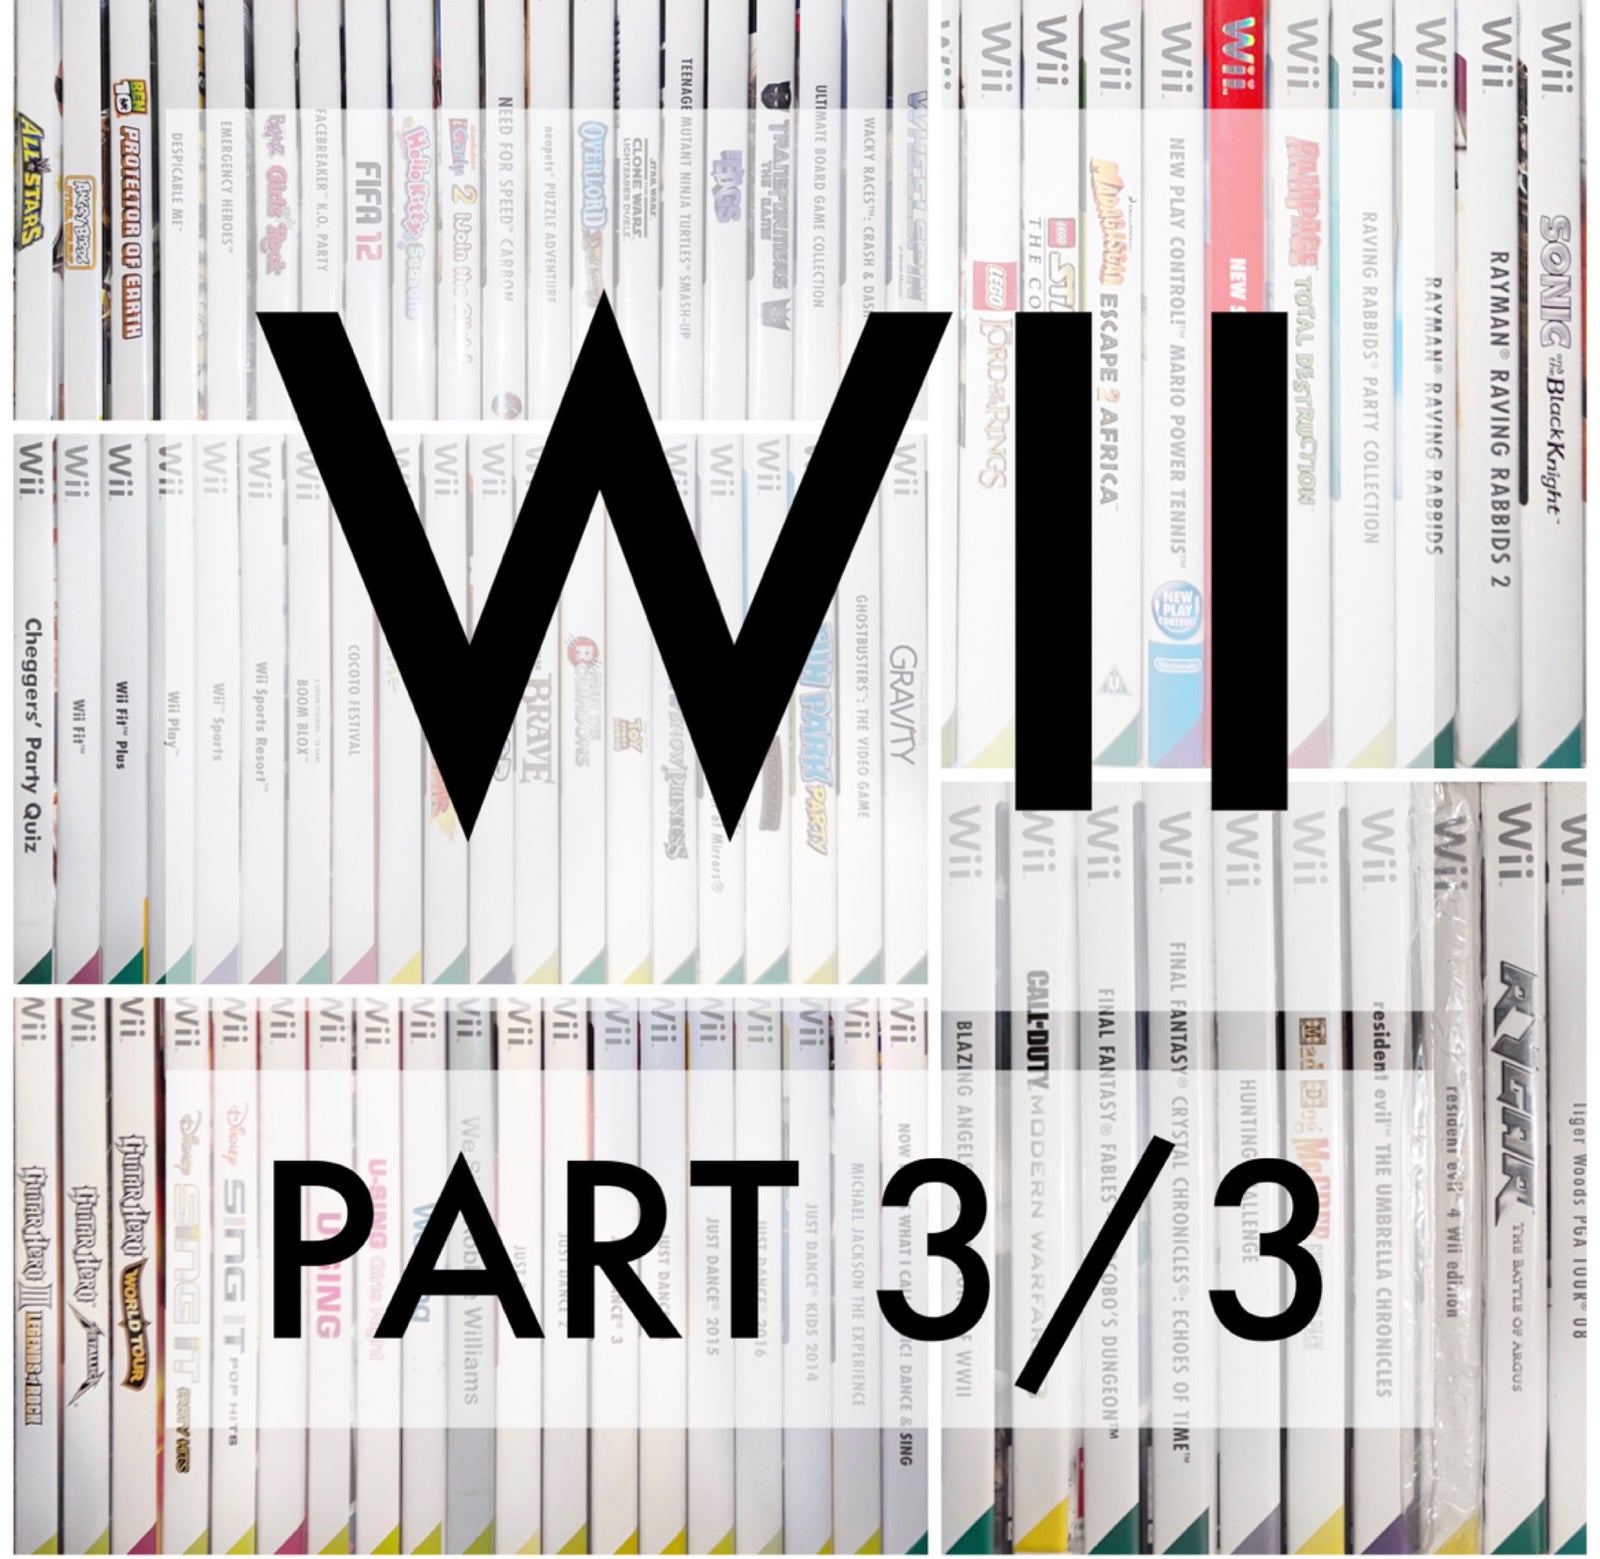 WII PART 3 SKØNNE TITLER TIL NINTENDO WII + U, Nintendo Wii